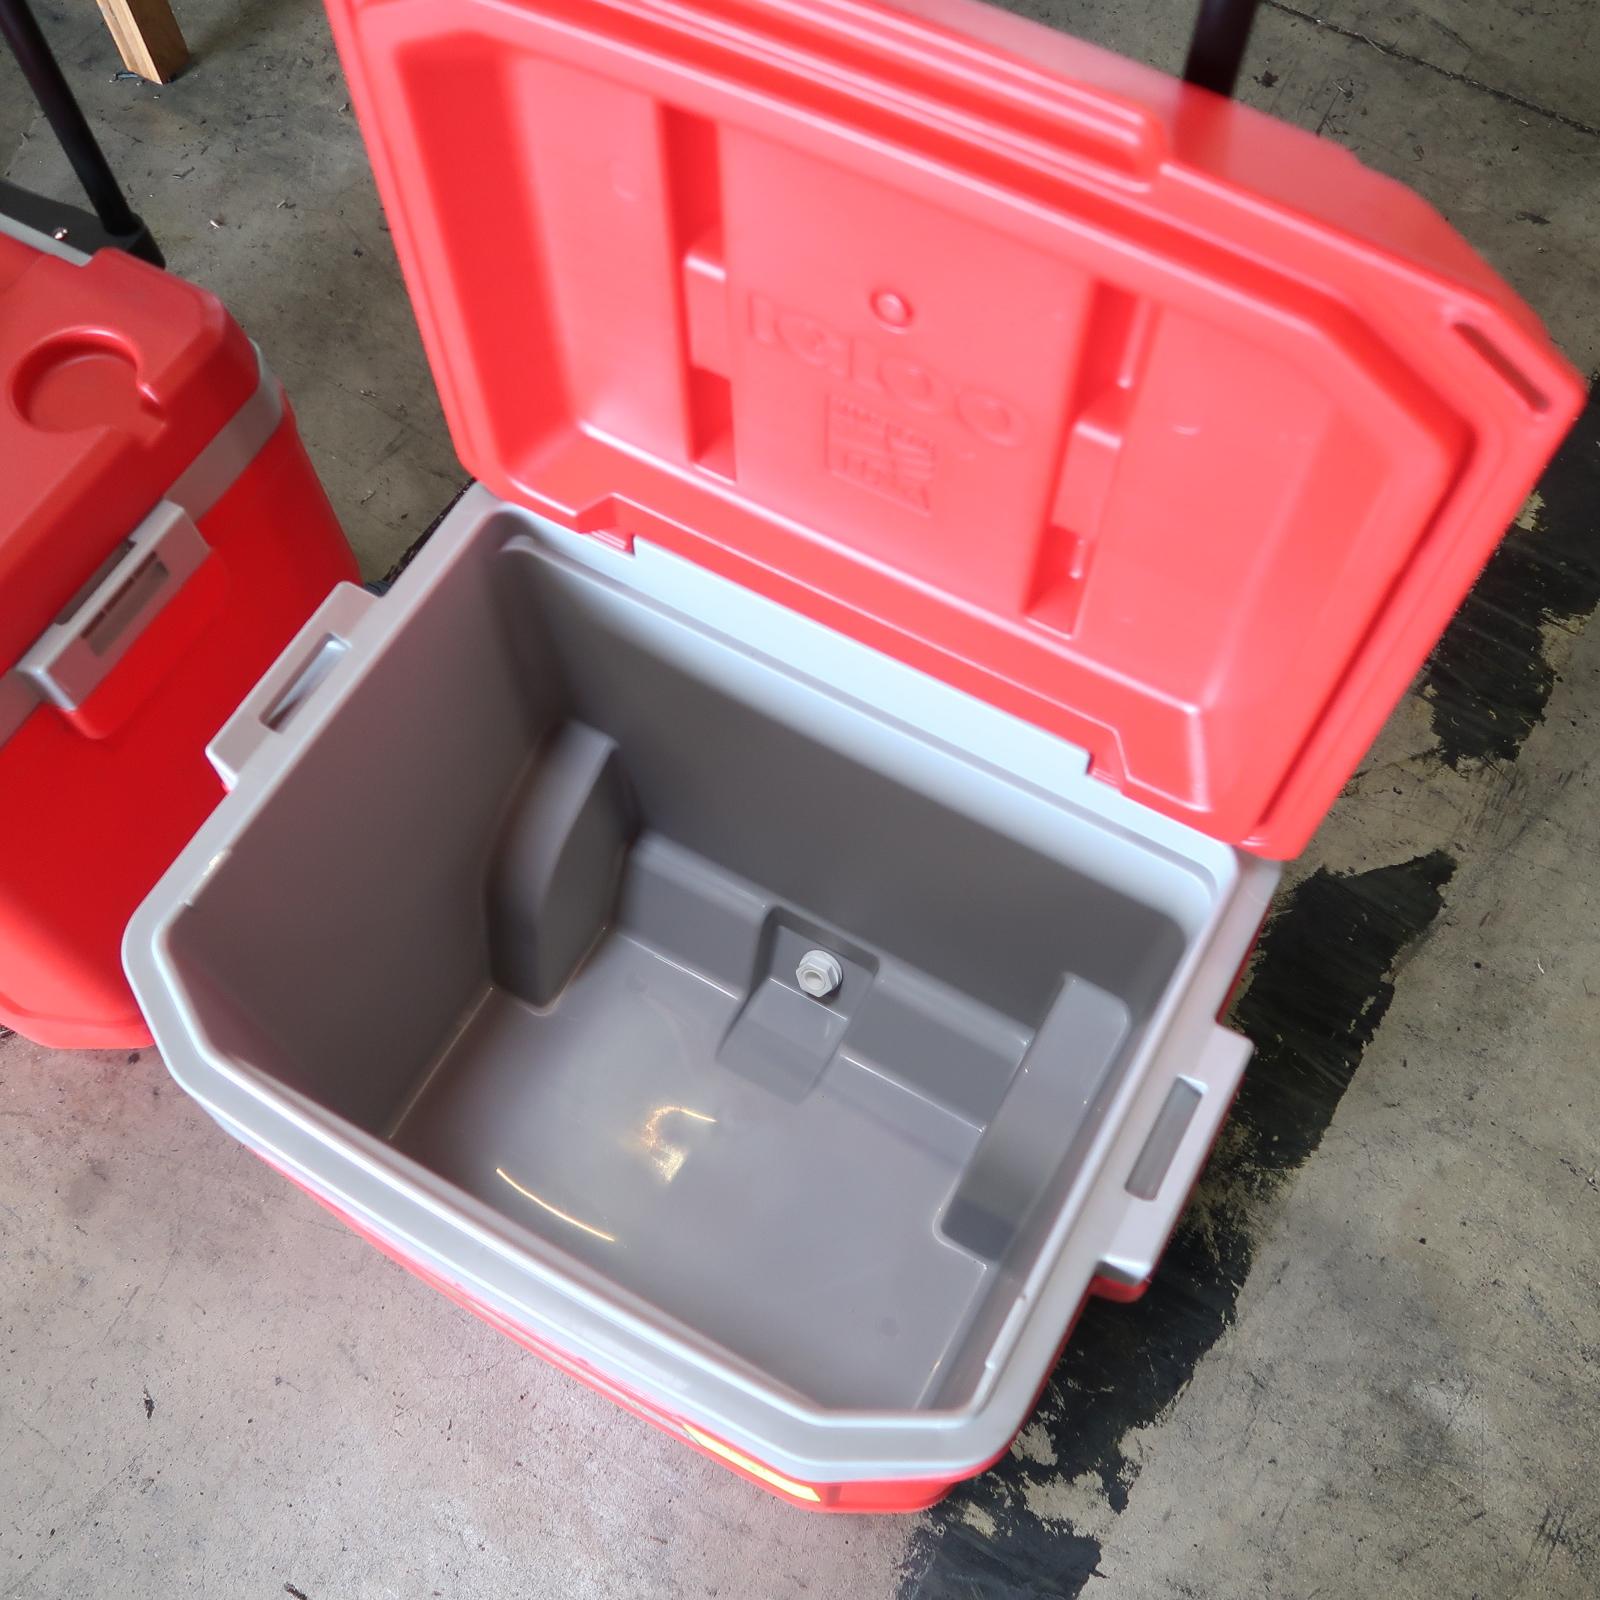 Igloo 60qt ice chest w/ wheels & handle